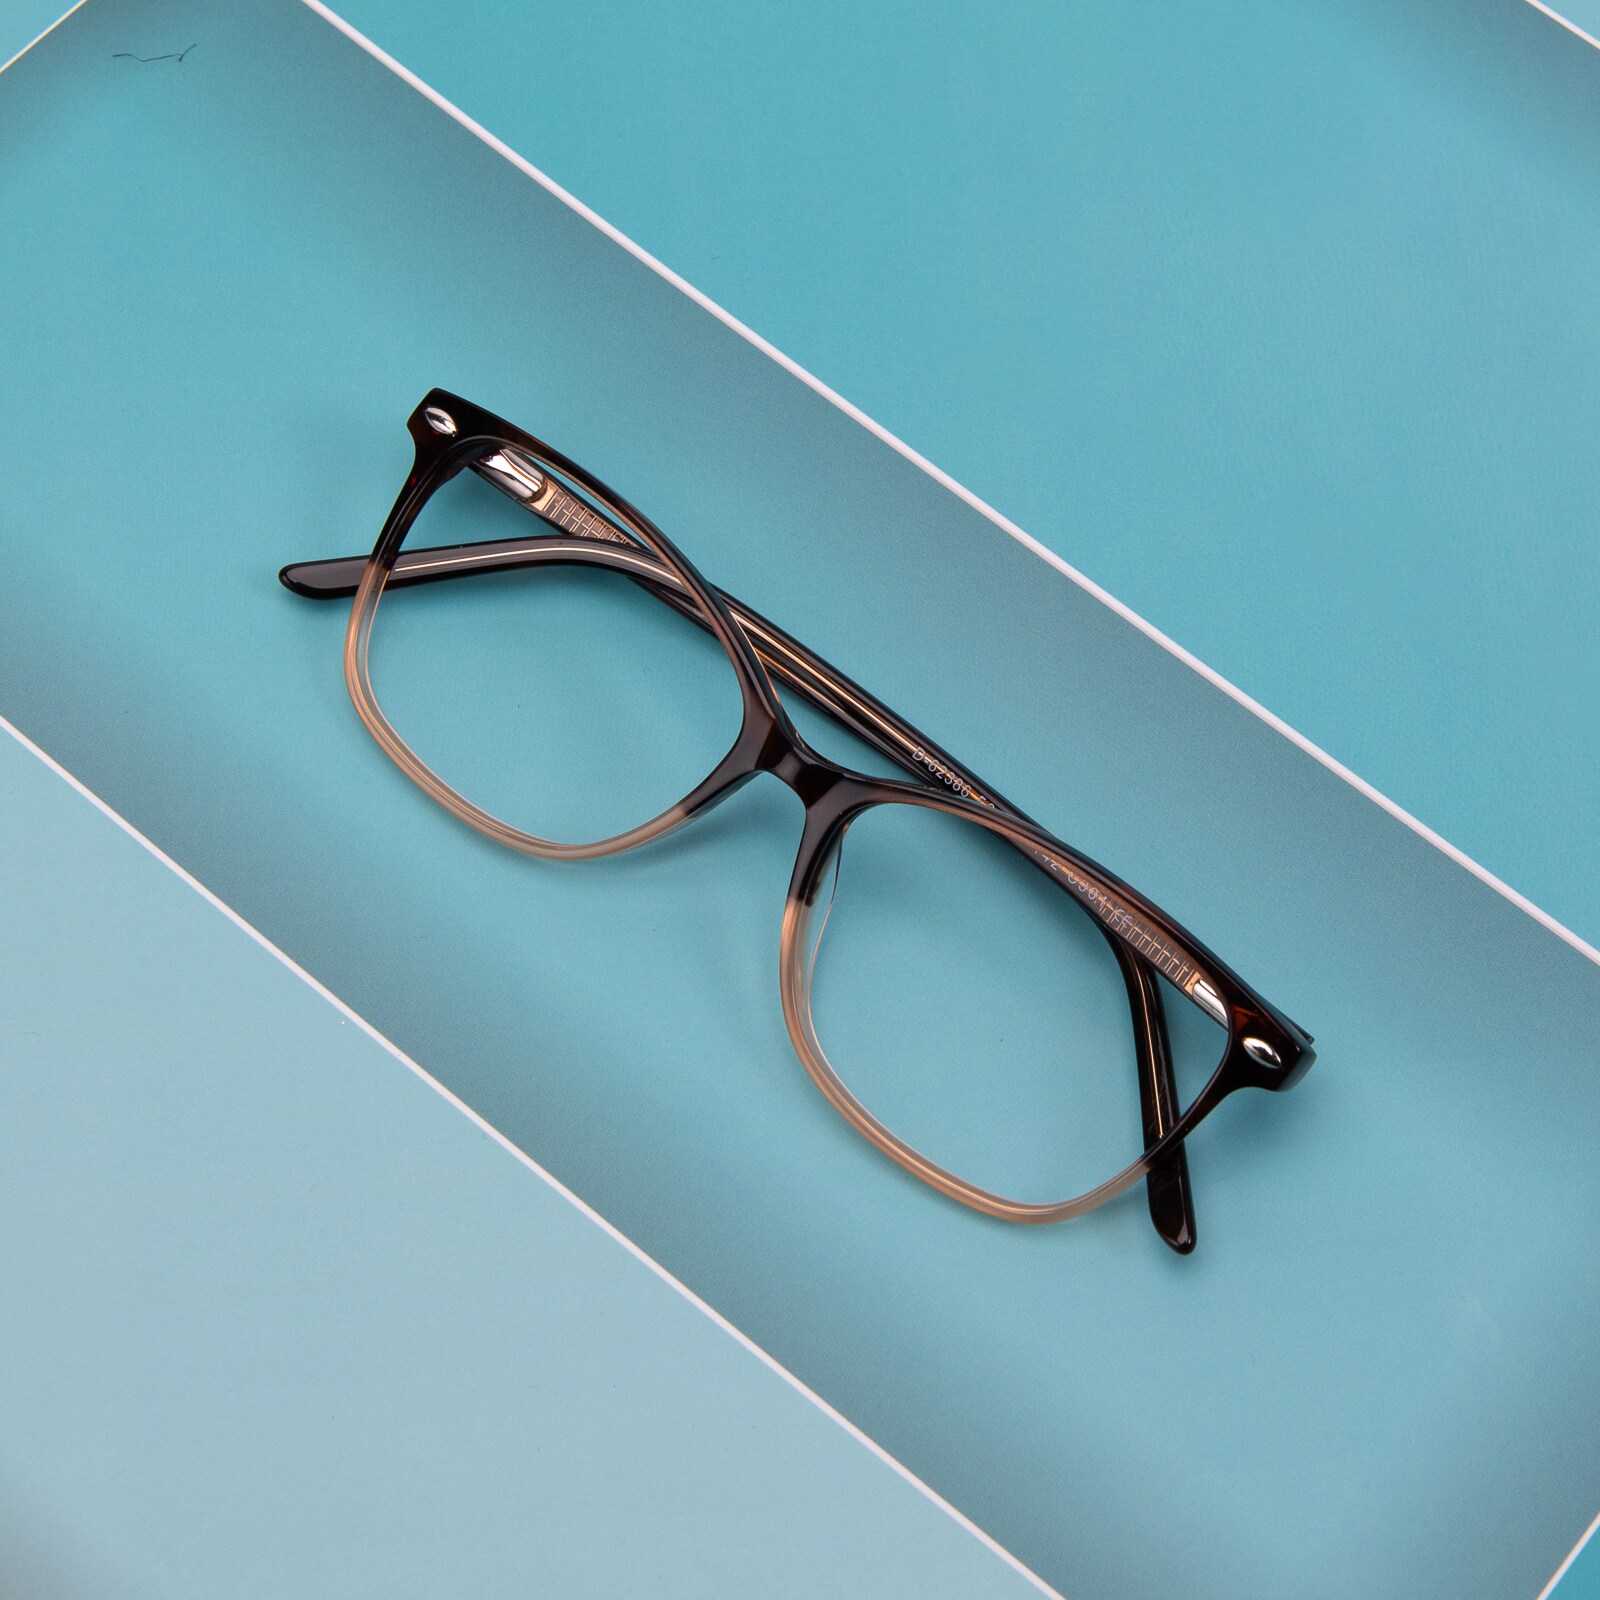 Oval,Classic Wayframe,Horn Eyeglasses, Full Frame Tortoise/Brown Plastic - FZ1297